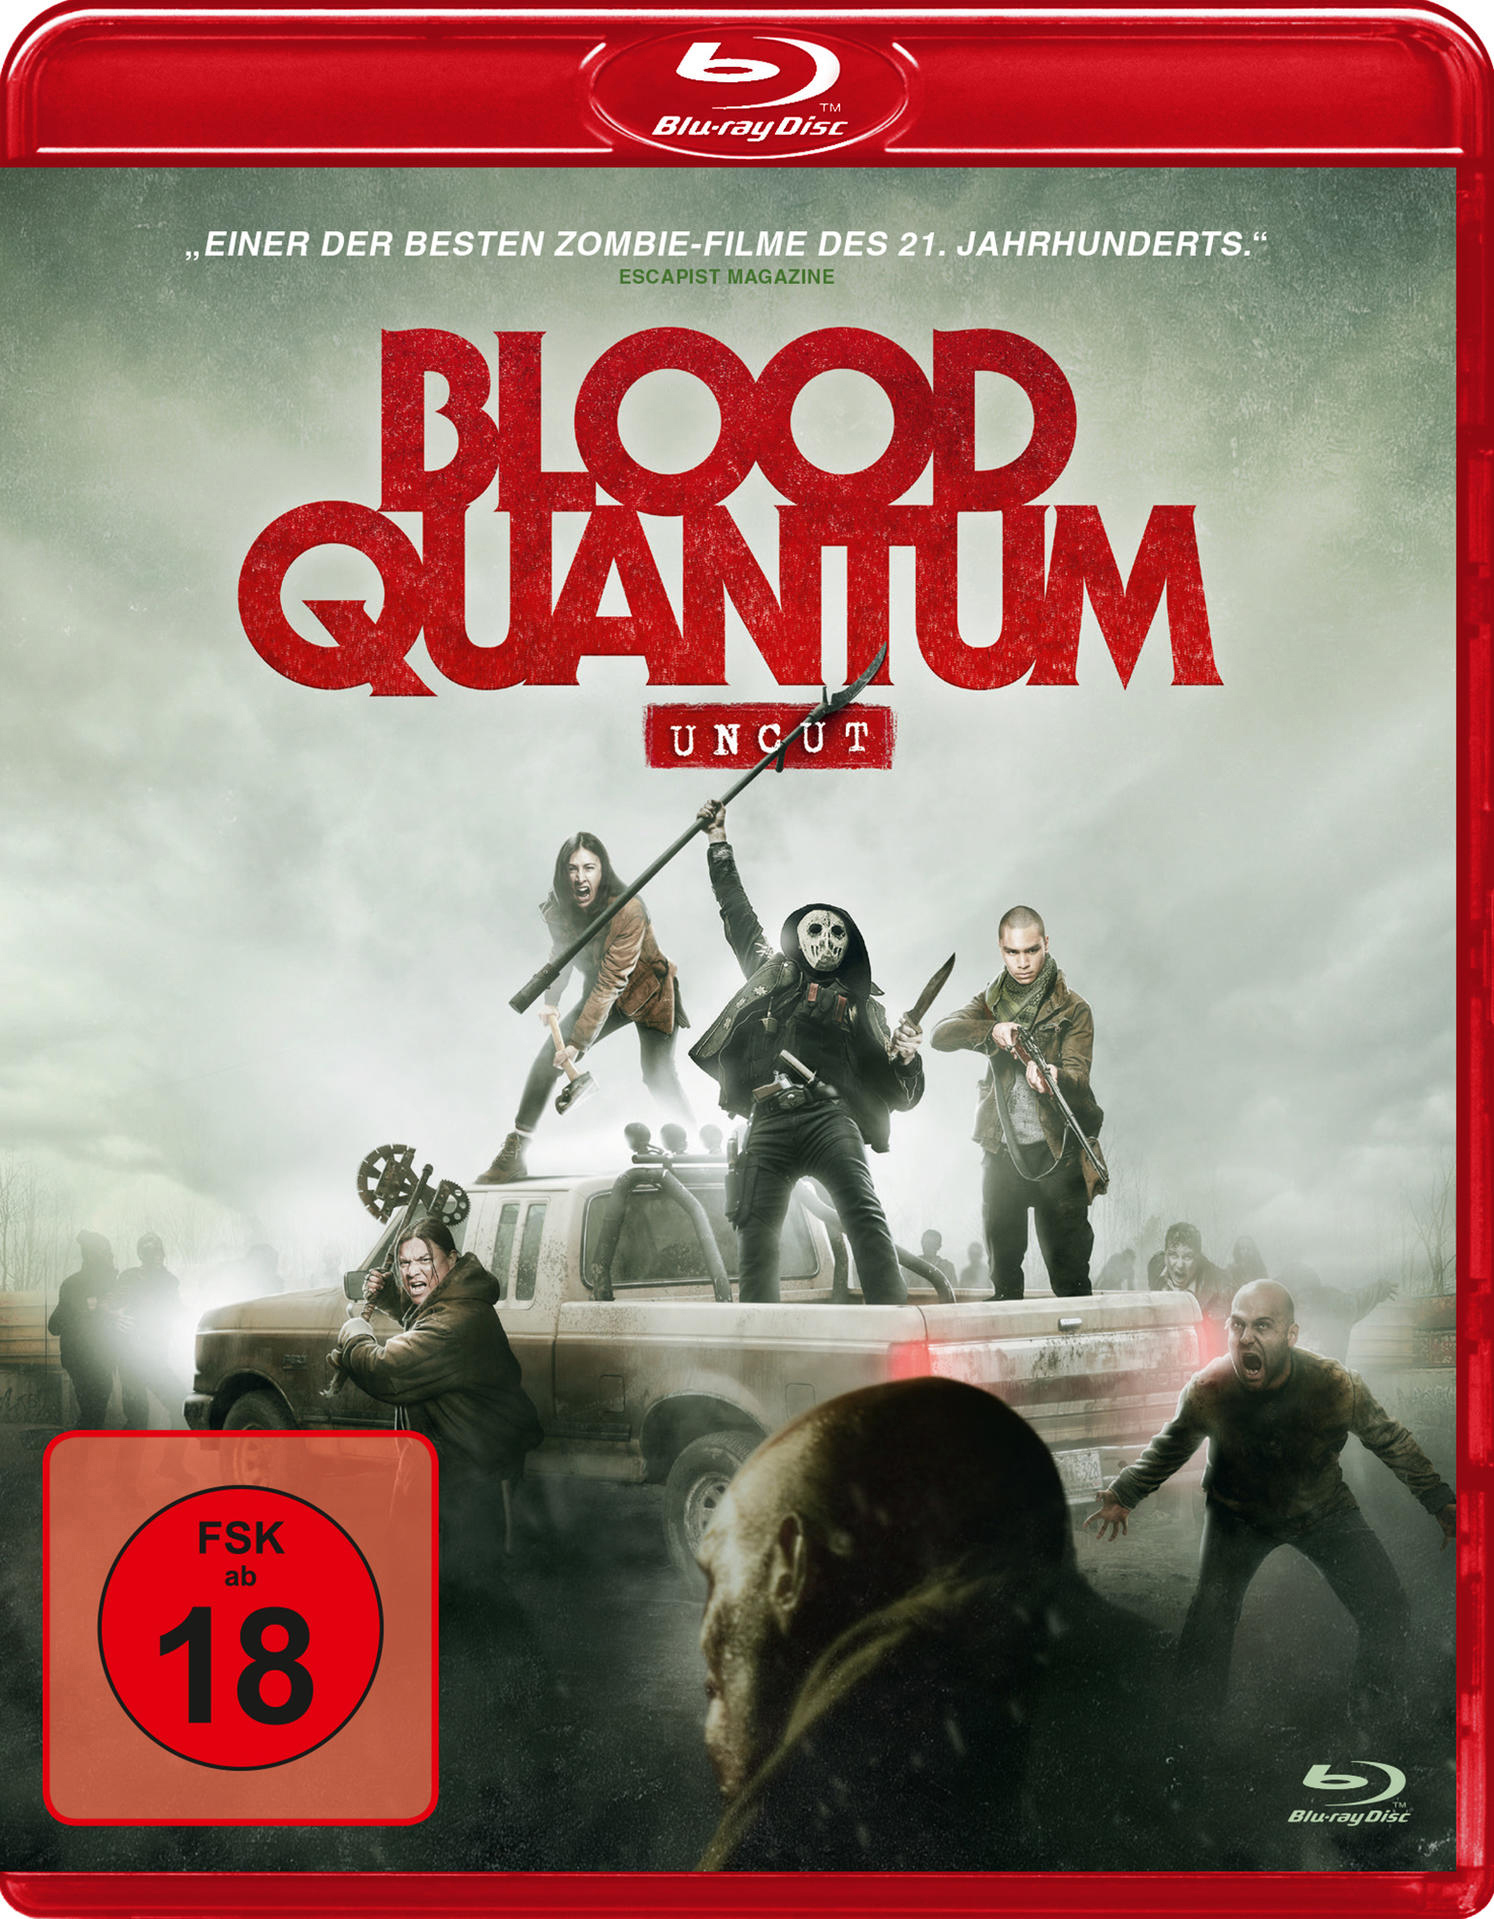 Blood Blu-ray Quantum